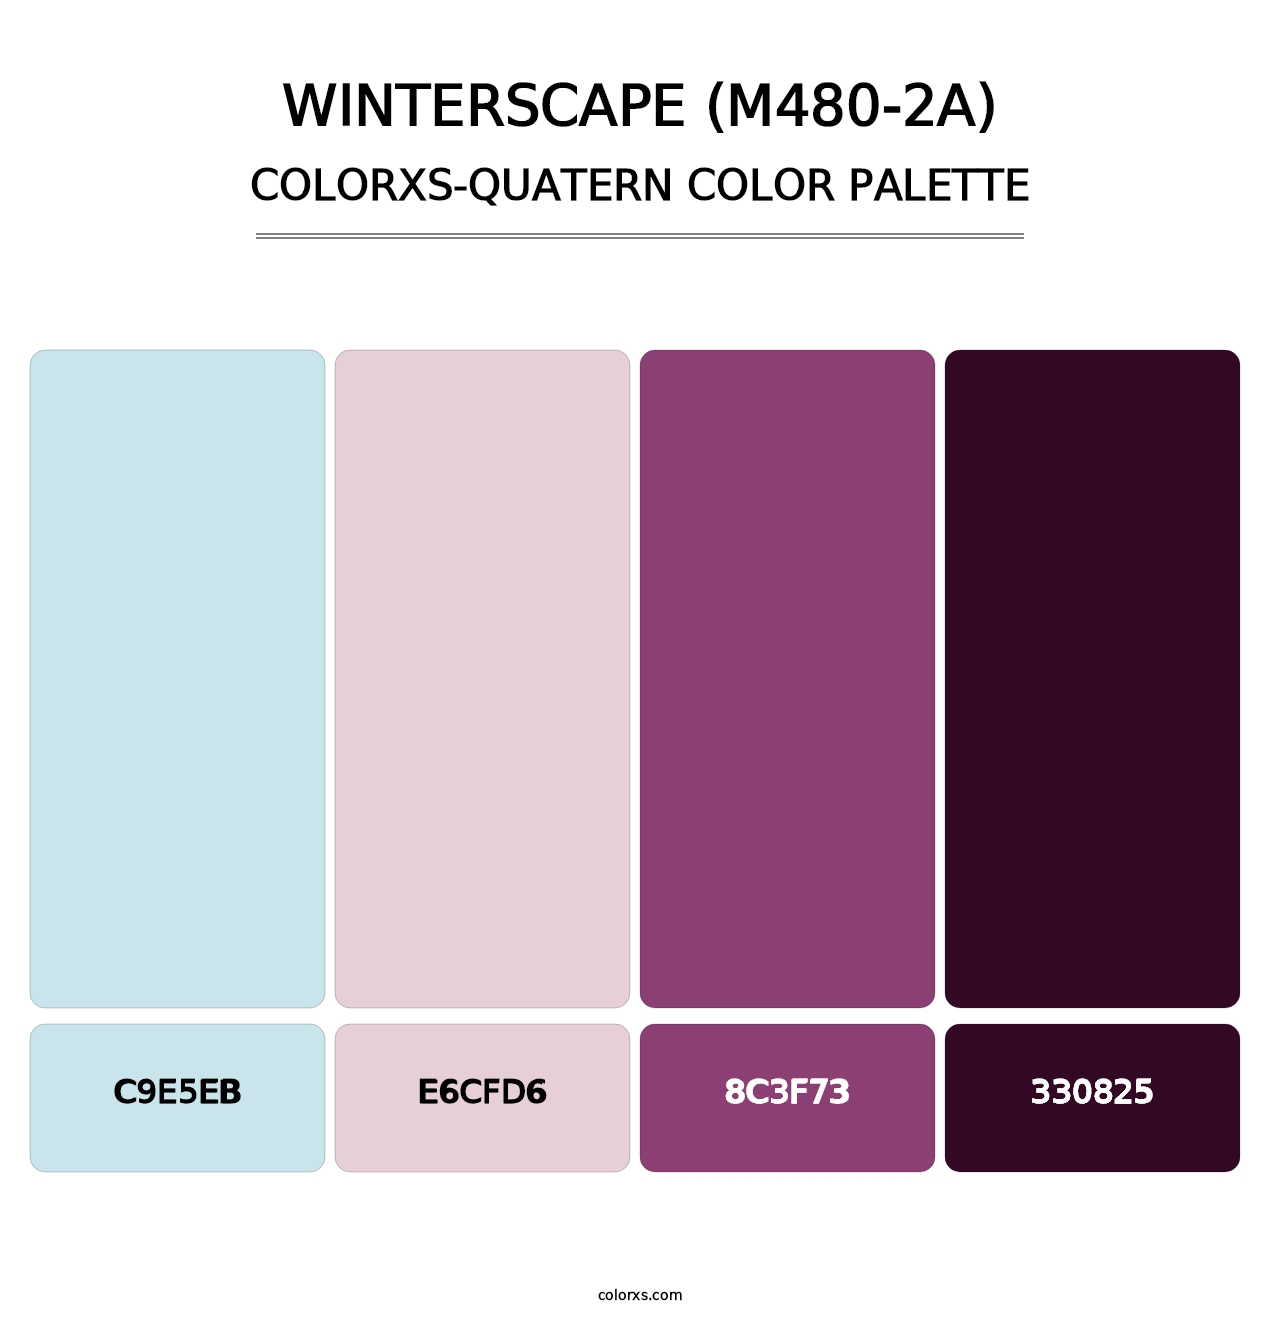 Winterscape (M480-2A) - Colorxs Quatern Palette